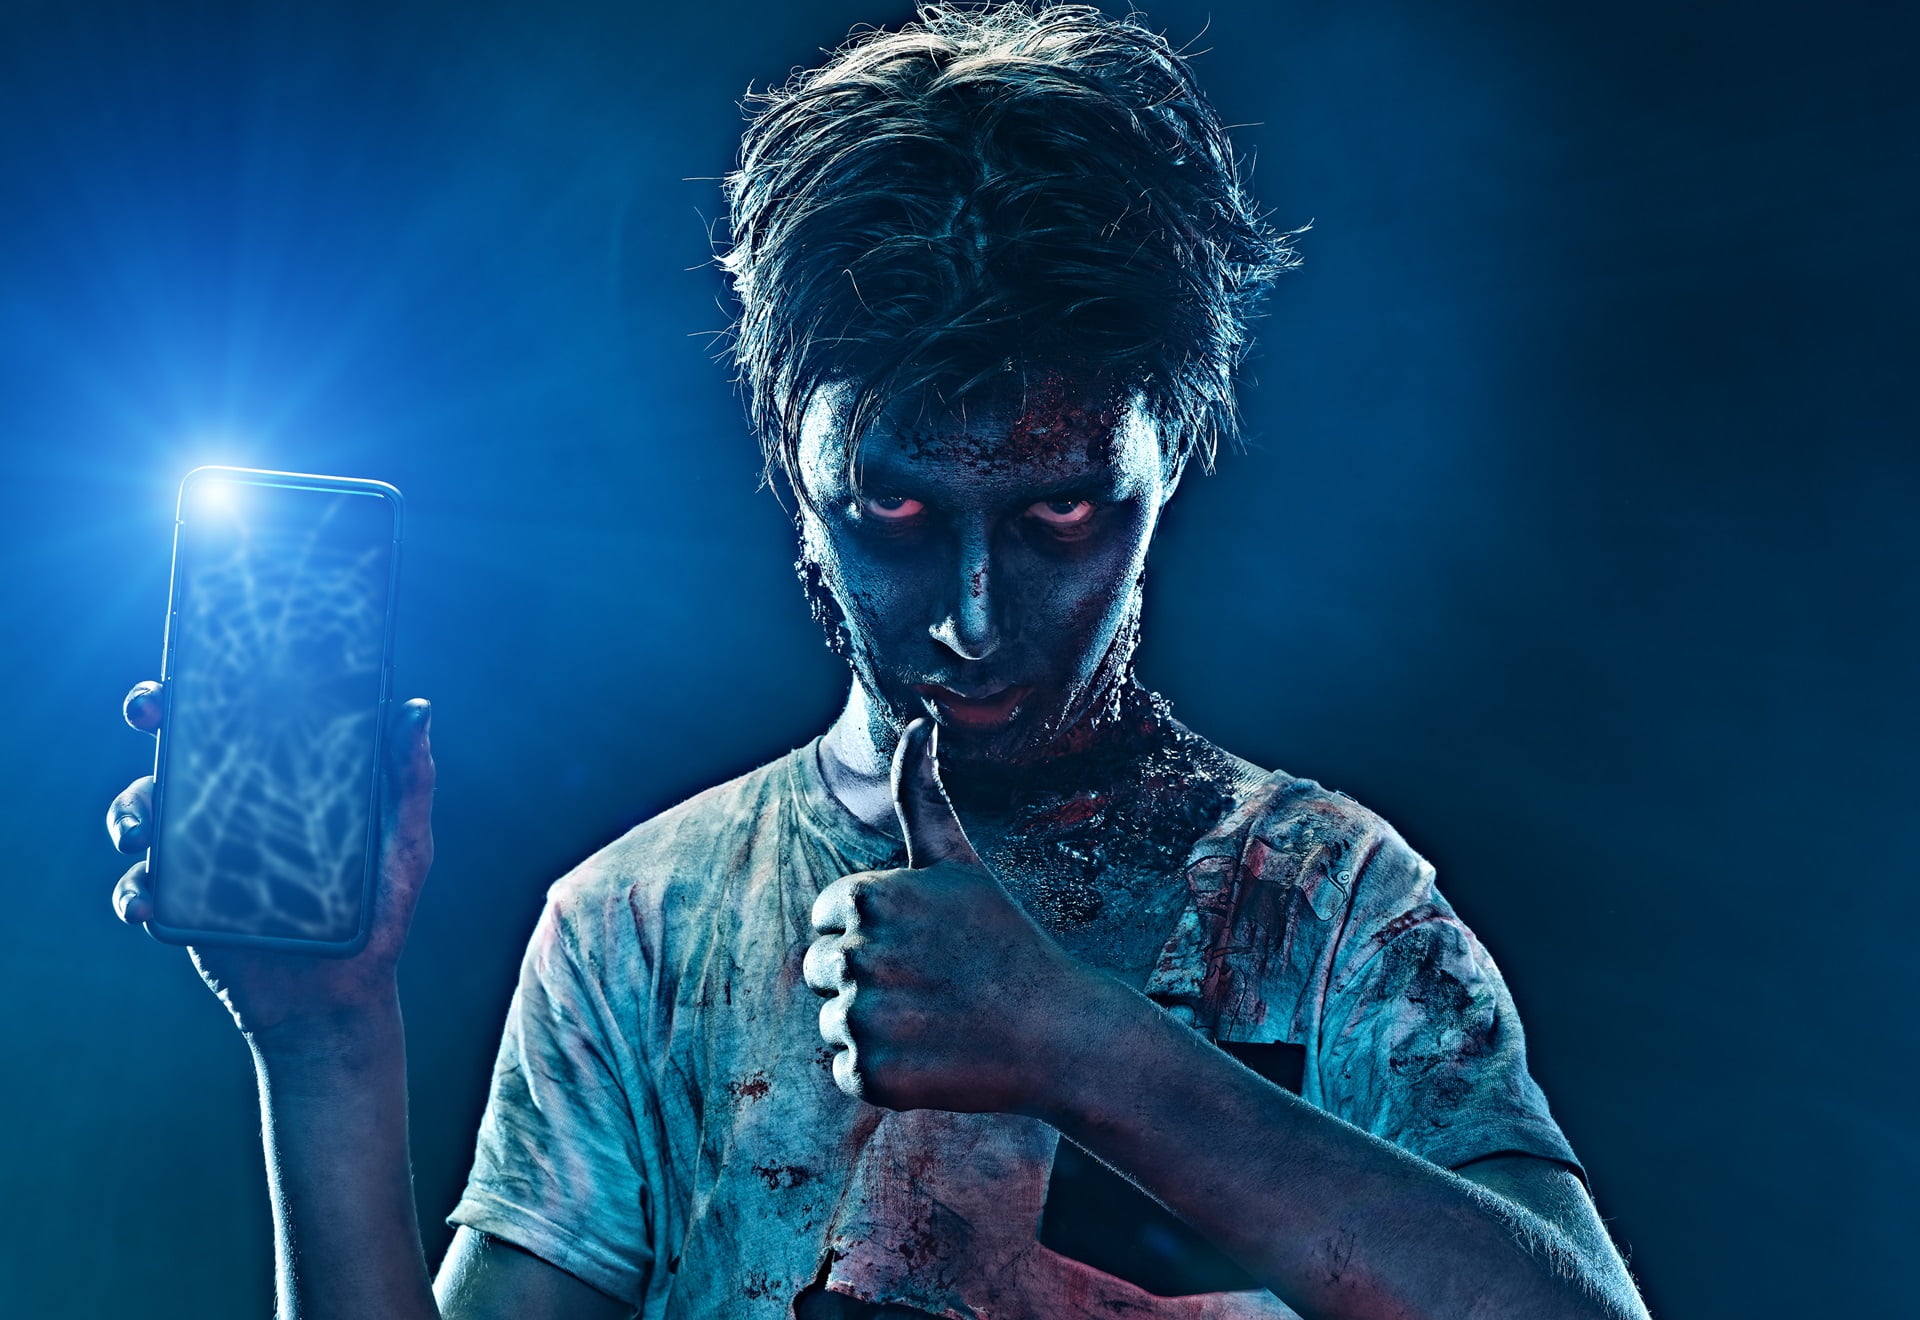 Osoba wyglądająca jak zombie trzymająca smartfon z włączoną latarką i pokazująca kciuk w górę.